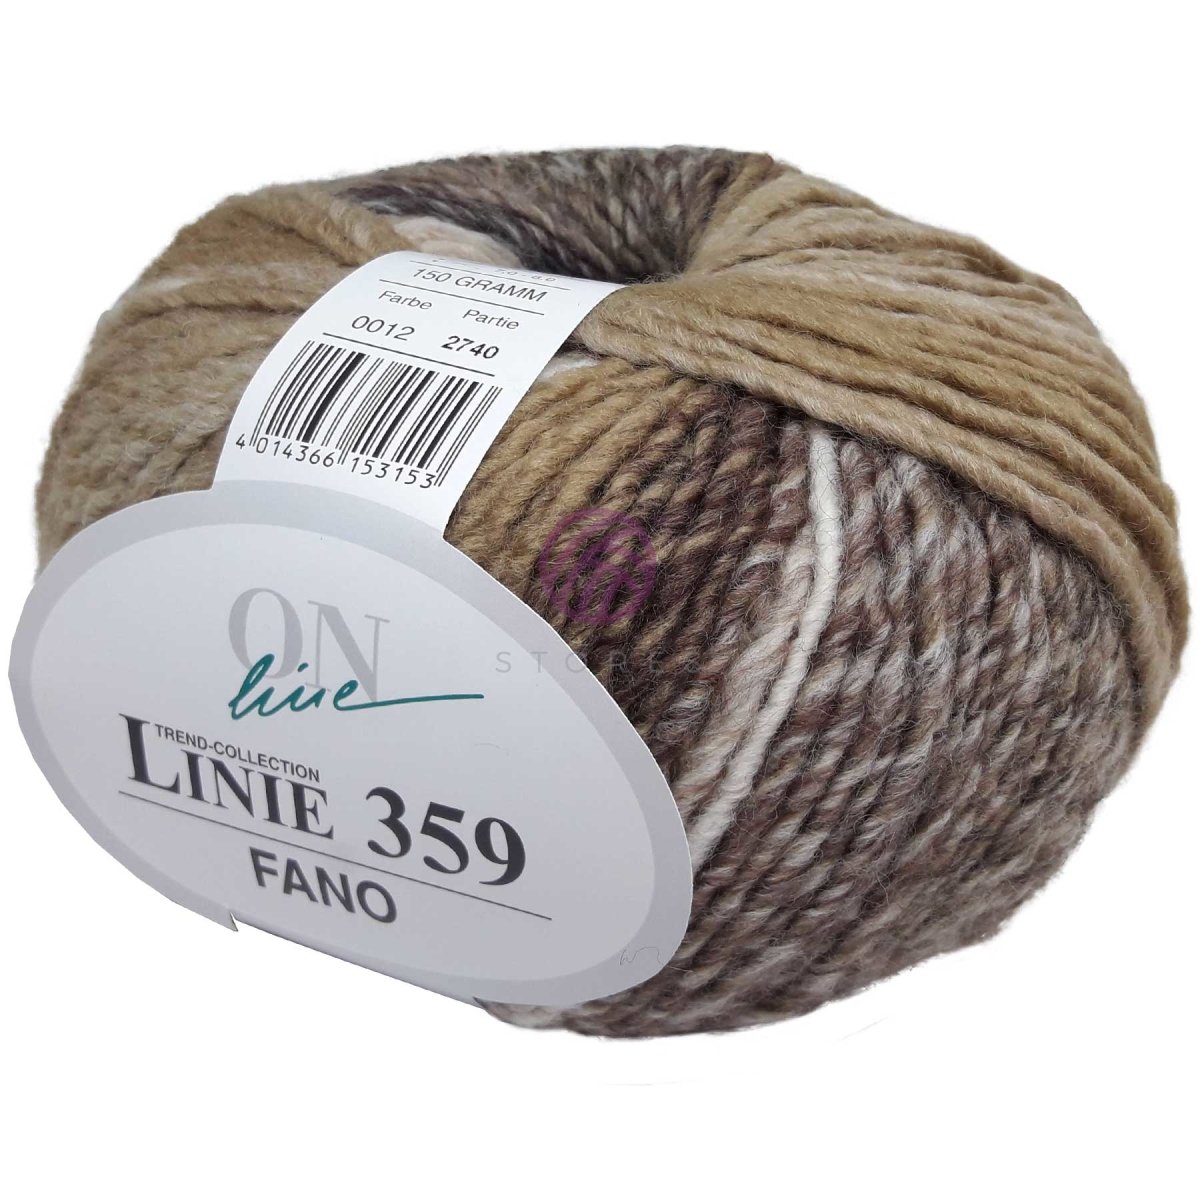 FANO - Crochetstores110359-0124014366153153